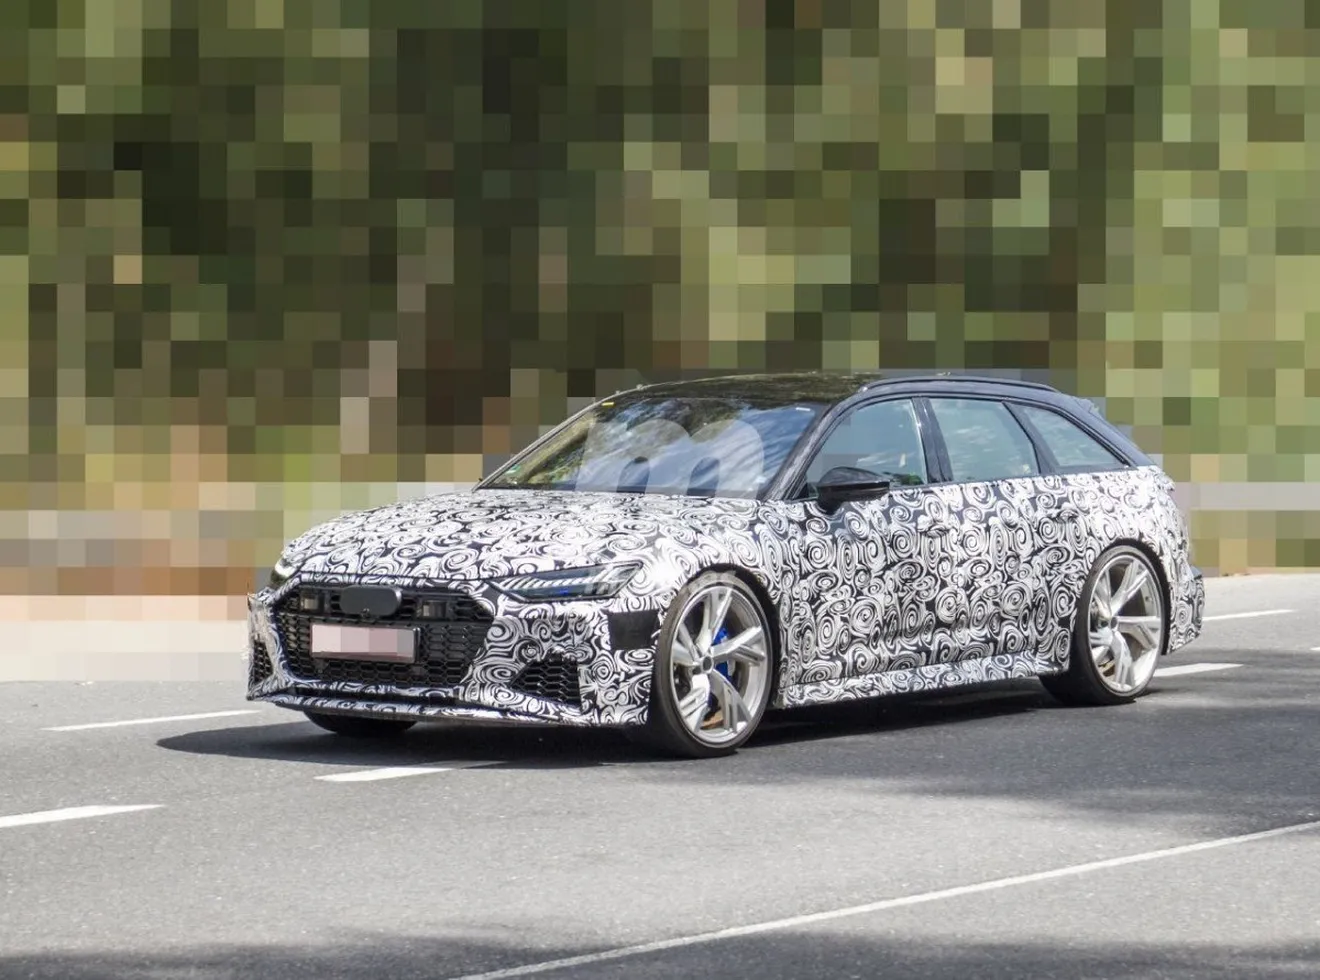 La nueva generación del Audi RS 6 Avant 2020 vuelve a dejarse ver en pruebas